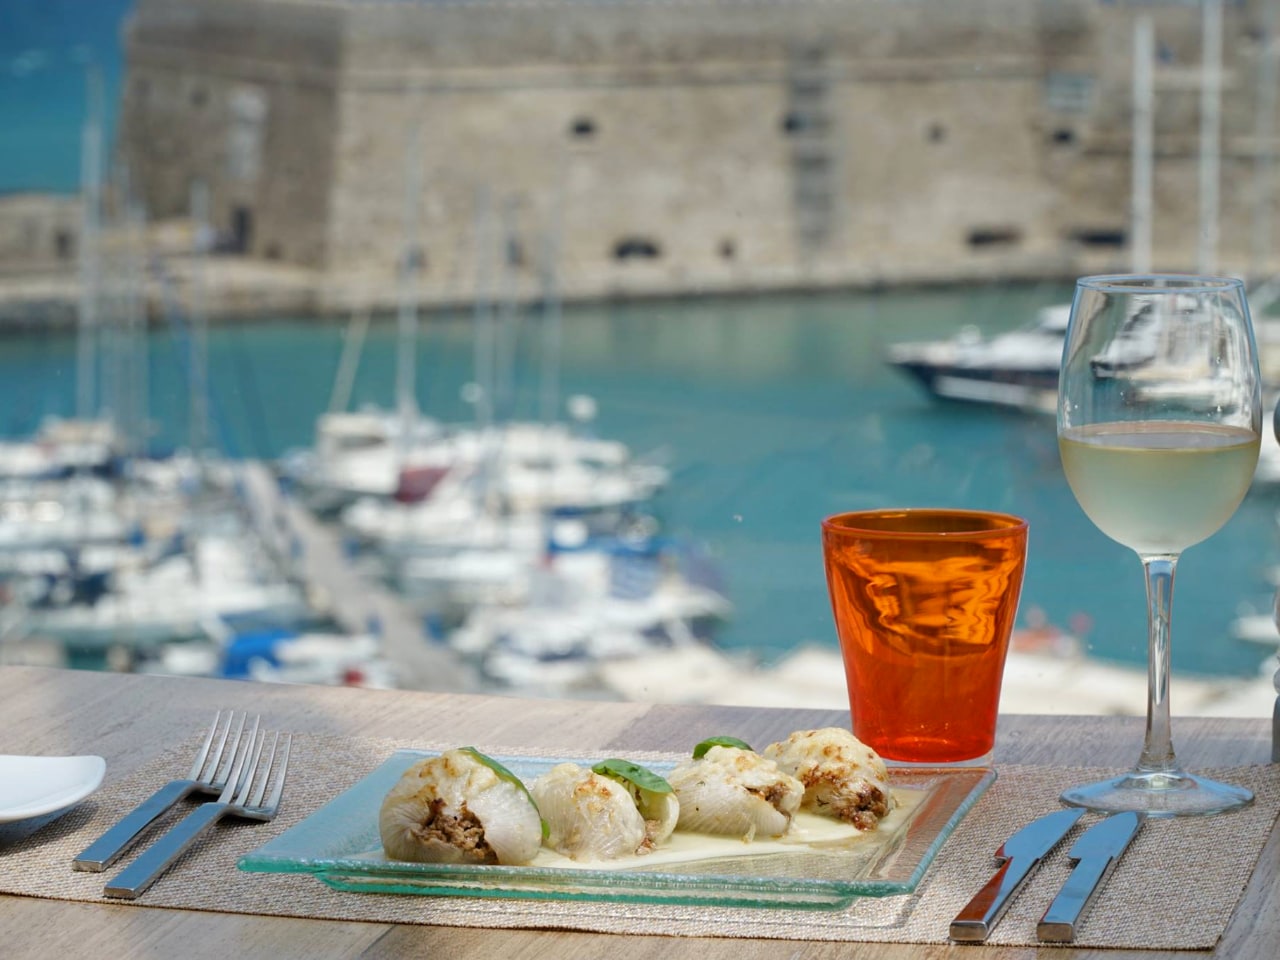 Herbs’ Garden Restaurant, Lato Boutique Hotel in Heraklion Crete, herbs restaurant heraklion, best restaurants iraklion crete